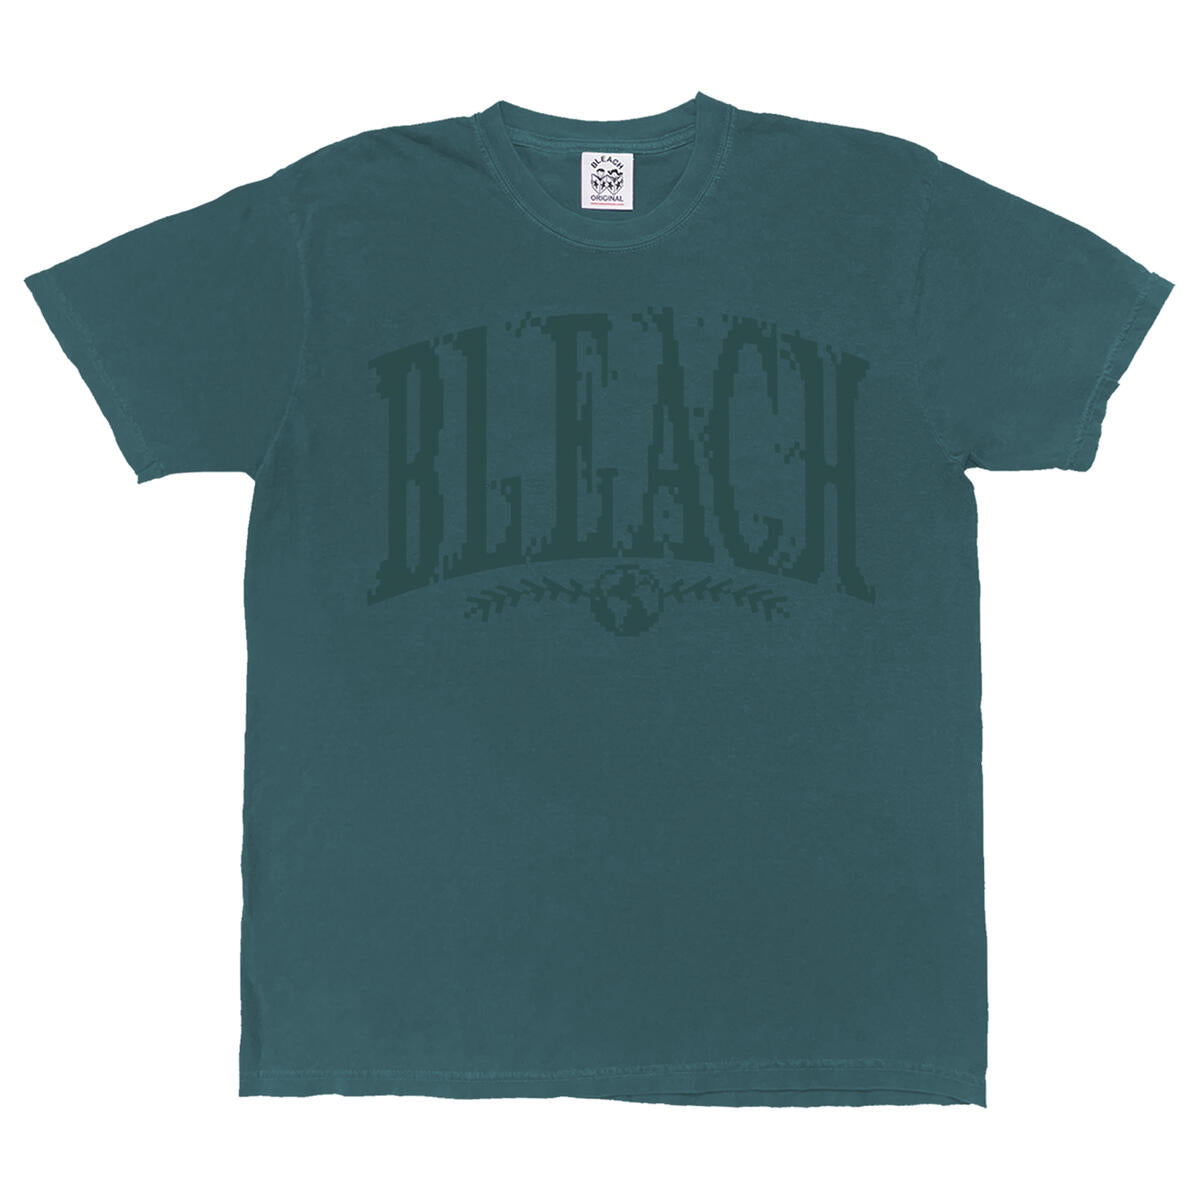 Bleach USA Pixels Tee Emerald